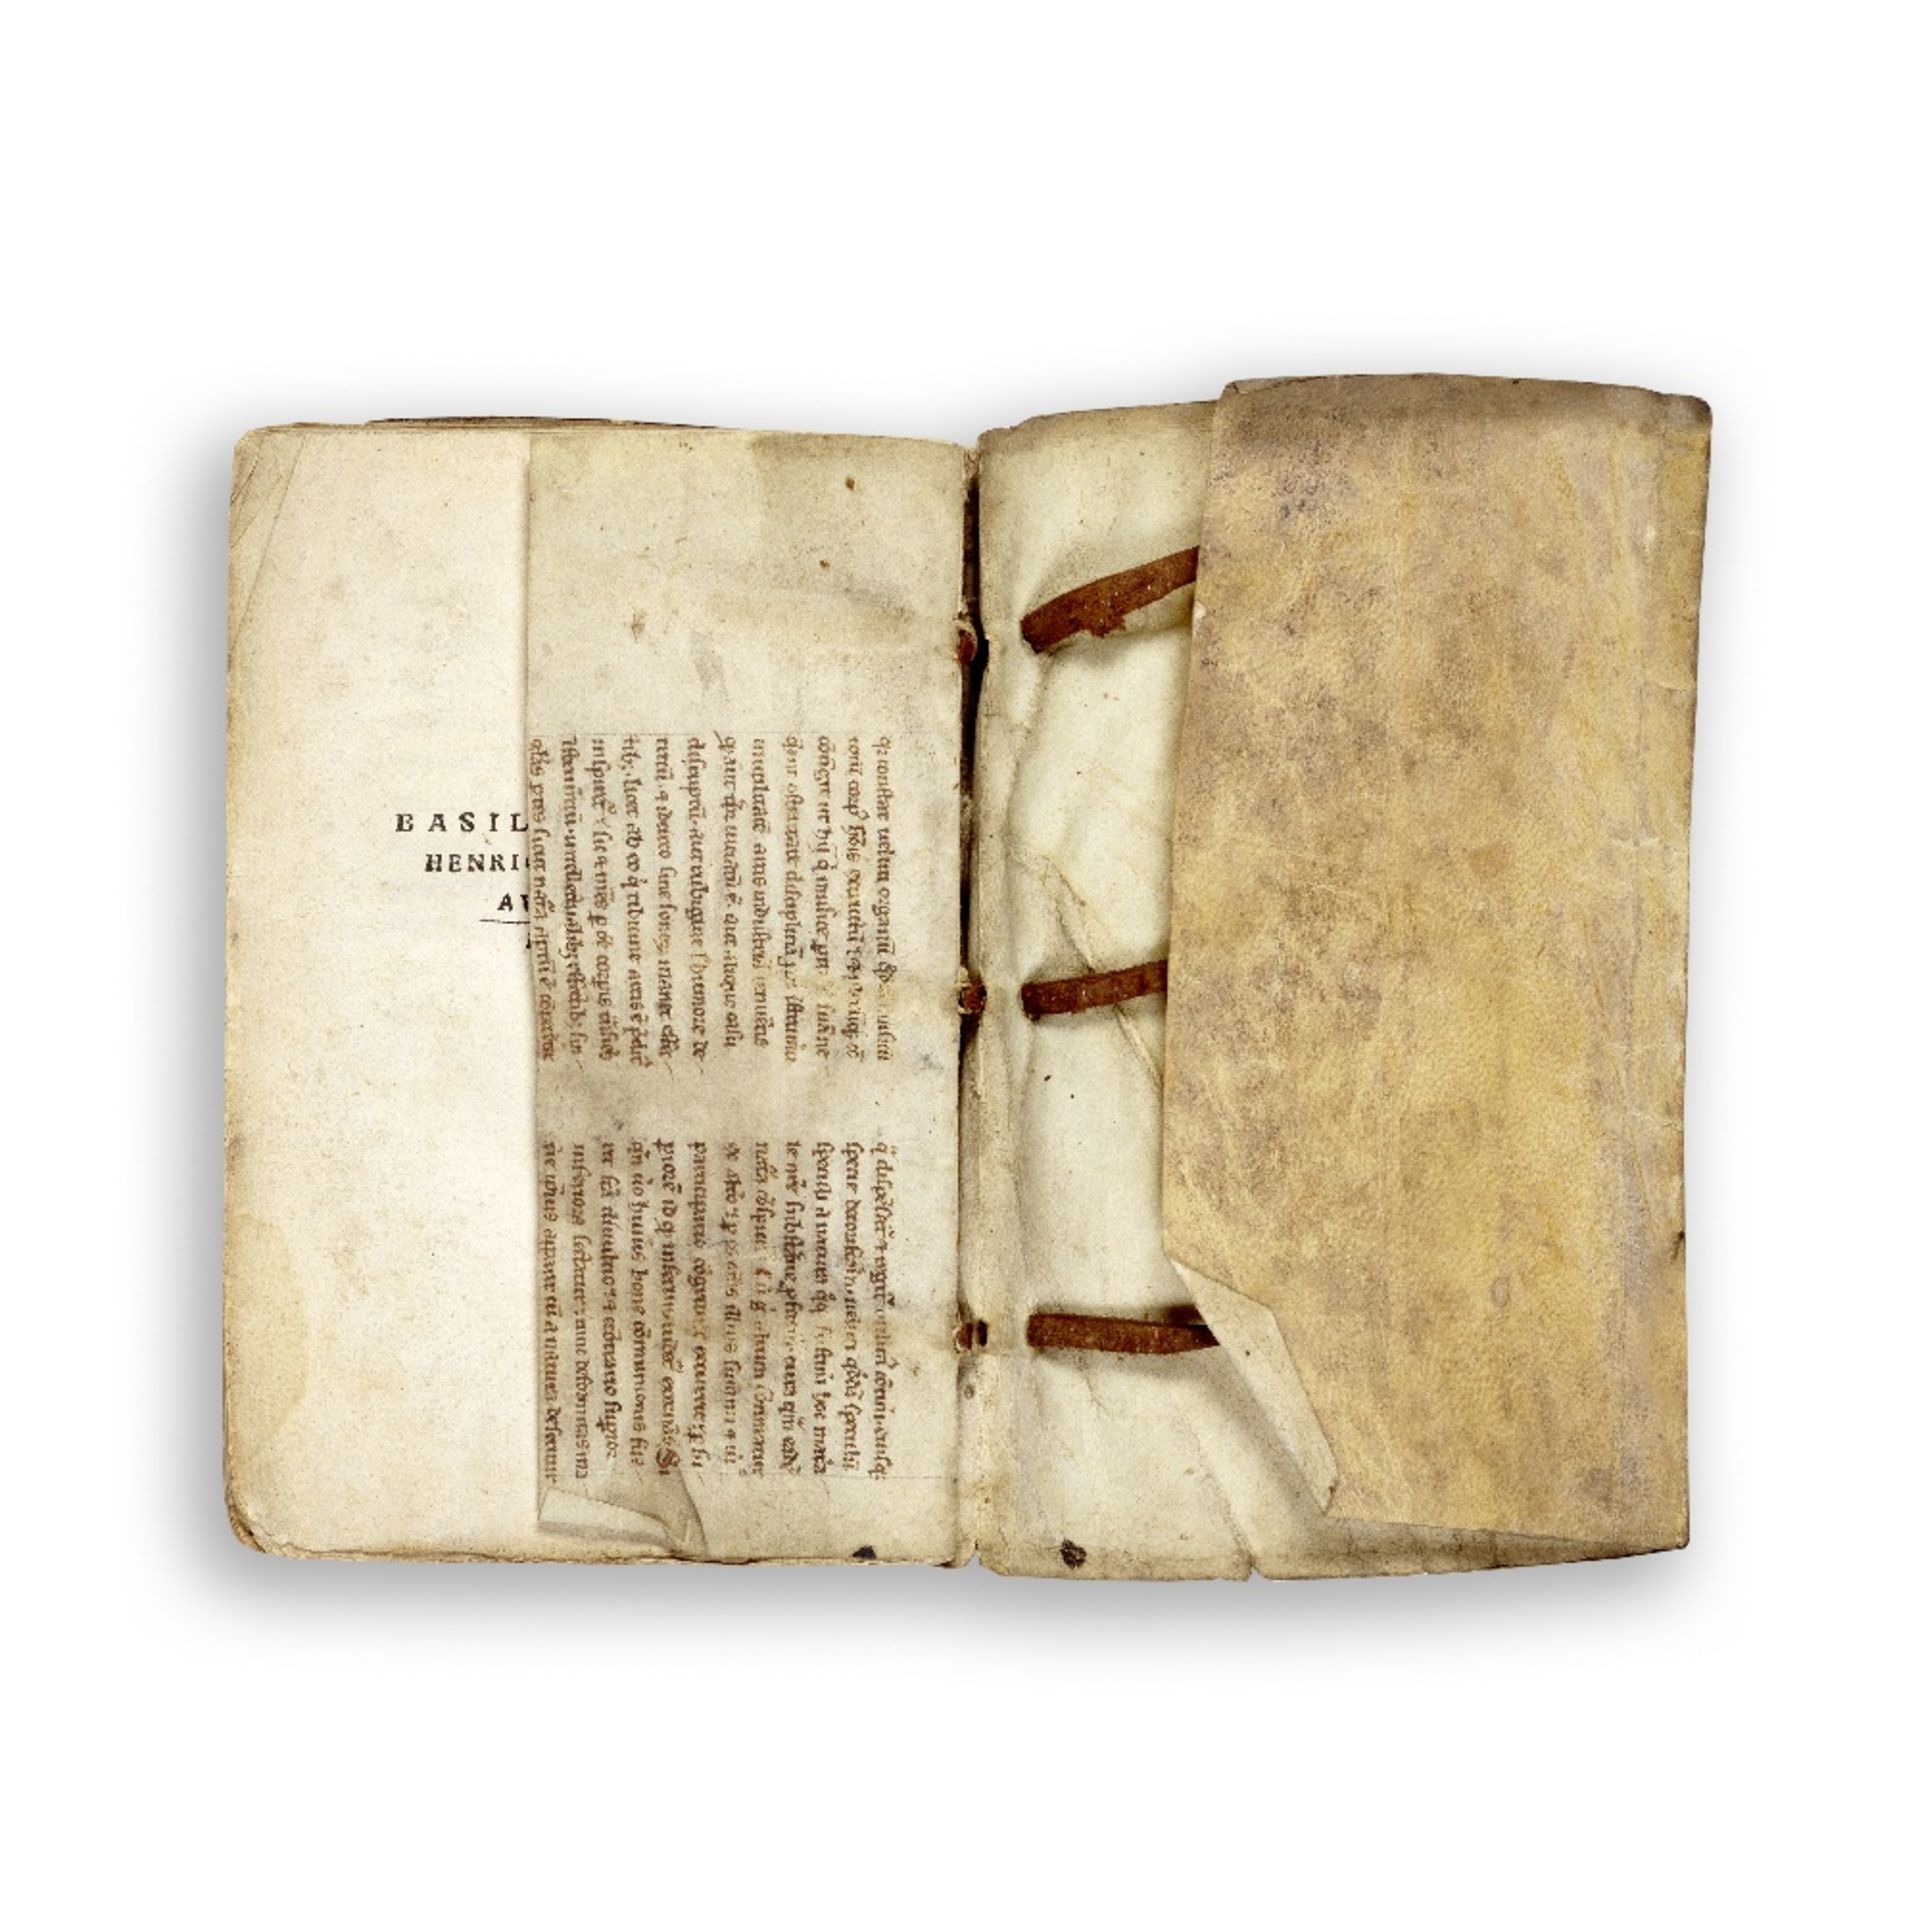 MEGANDER (KASPAR) In epistolam Pauli ad ephesios commentarius, 1534--CLAUDIANUS (CLAUDIUS) quotq...